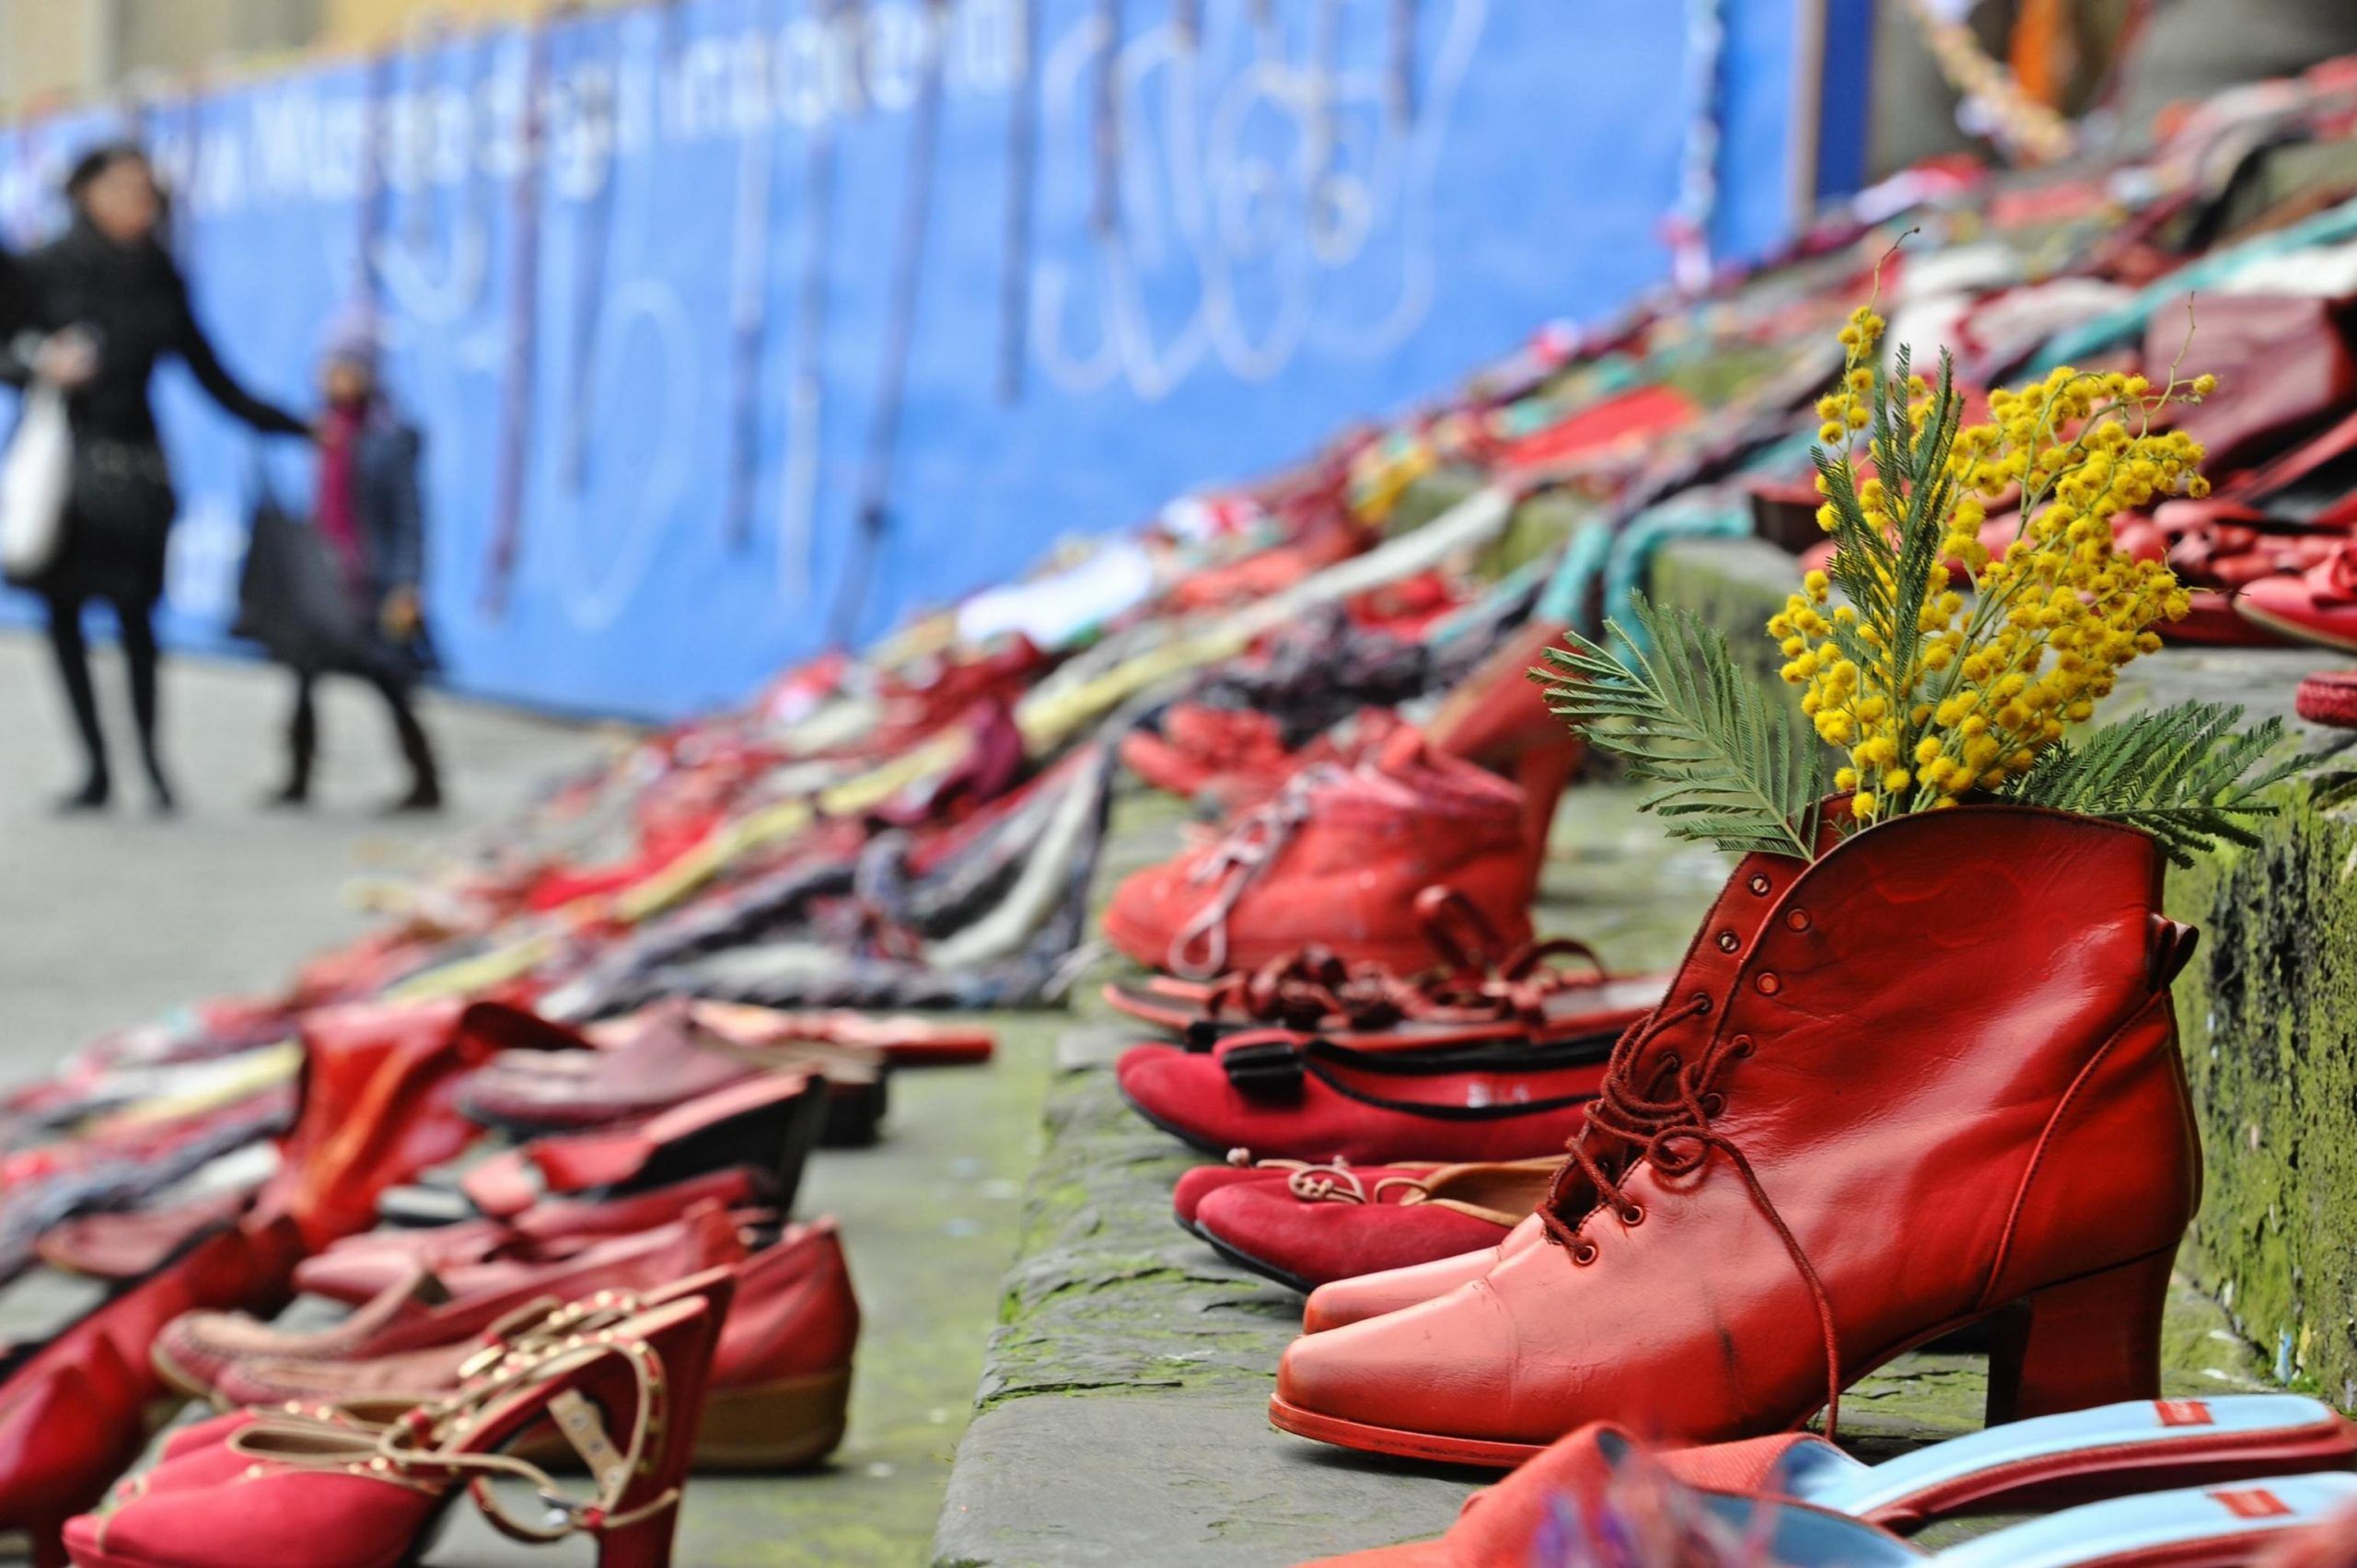 Scarpe rosse a Firenze per dire no alla violenza sulle donne